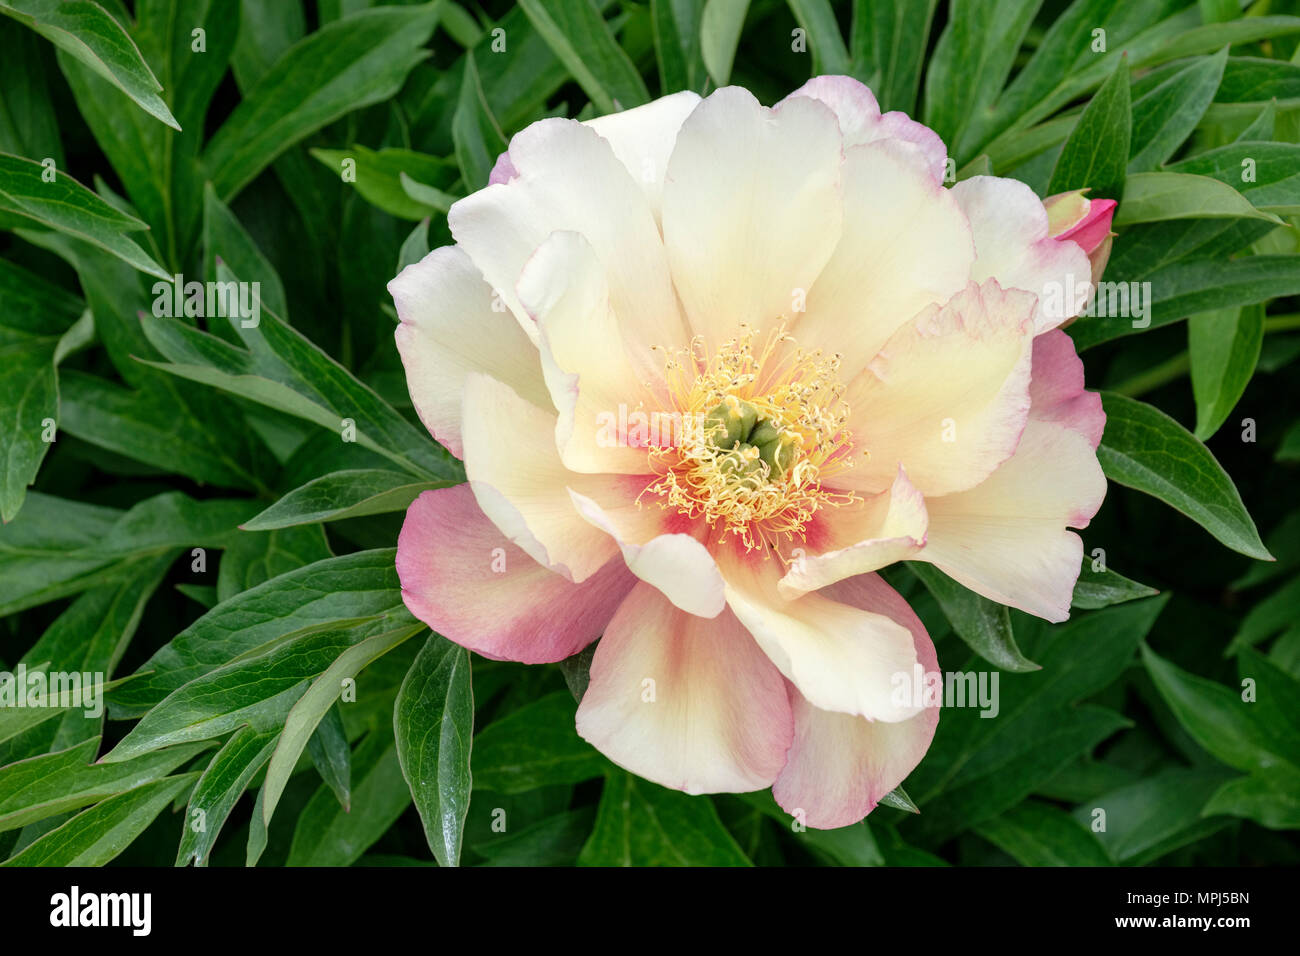 Einzelne Blüte der intersektionalen Pfingstrose Paeonia Julia Rose - die  Pfingstrose Neid Stockfotografie - Alamy